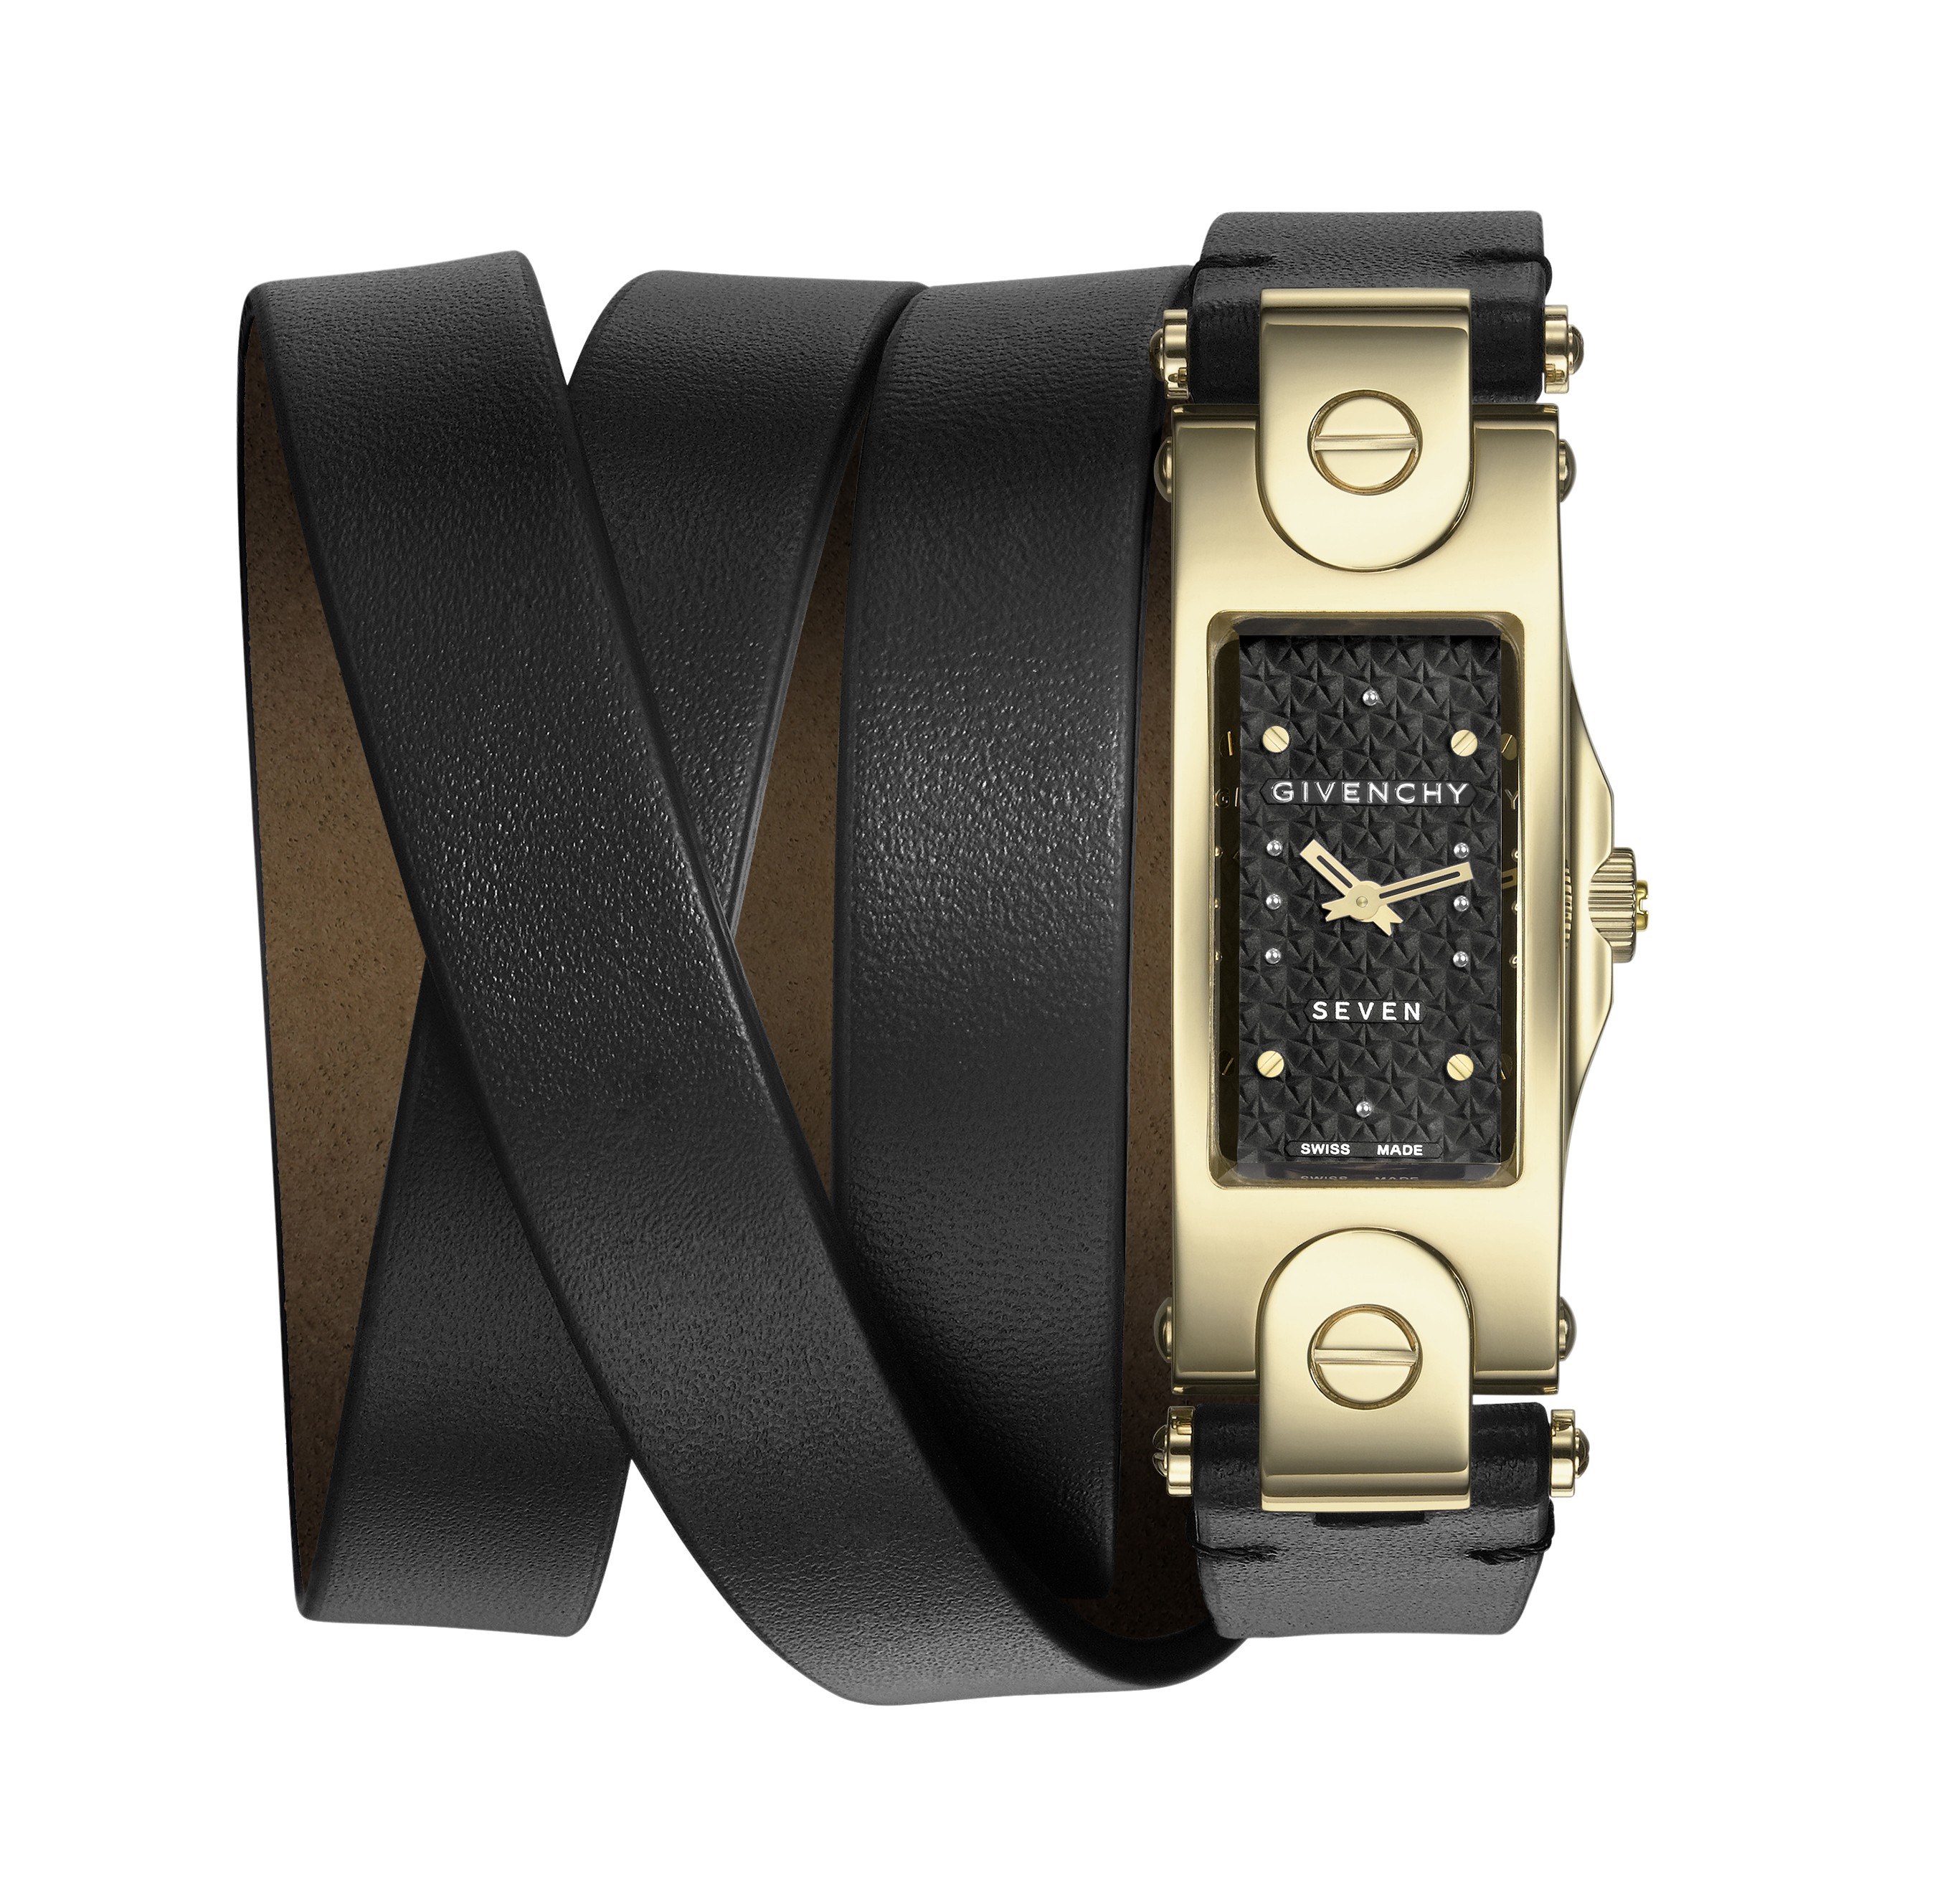 Givenchy lança nova linha de relógios, 